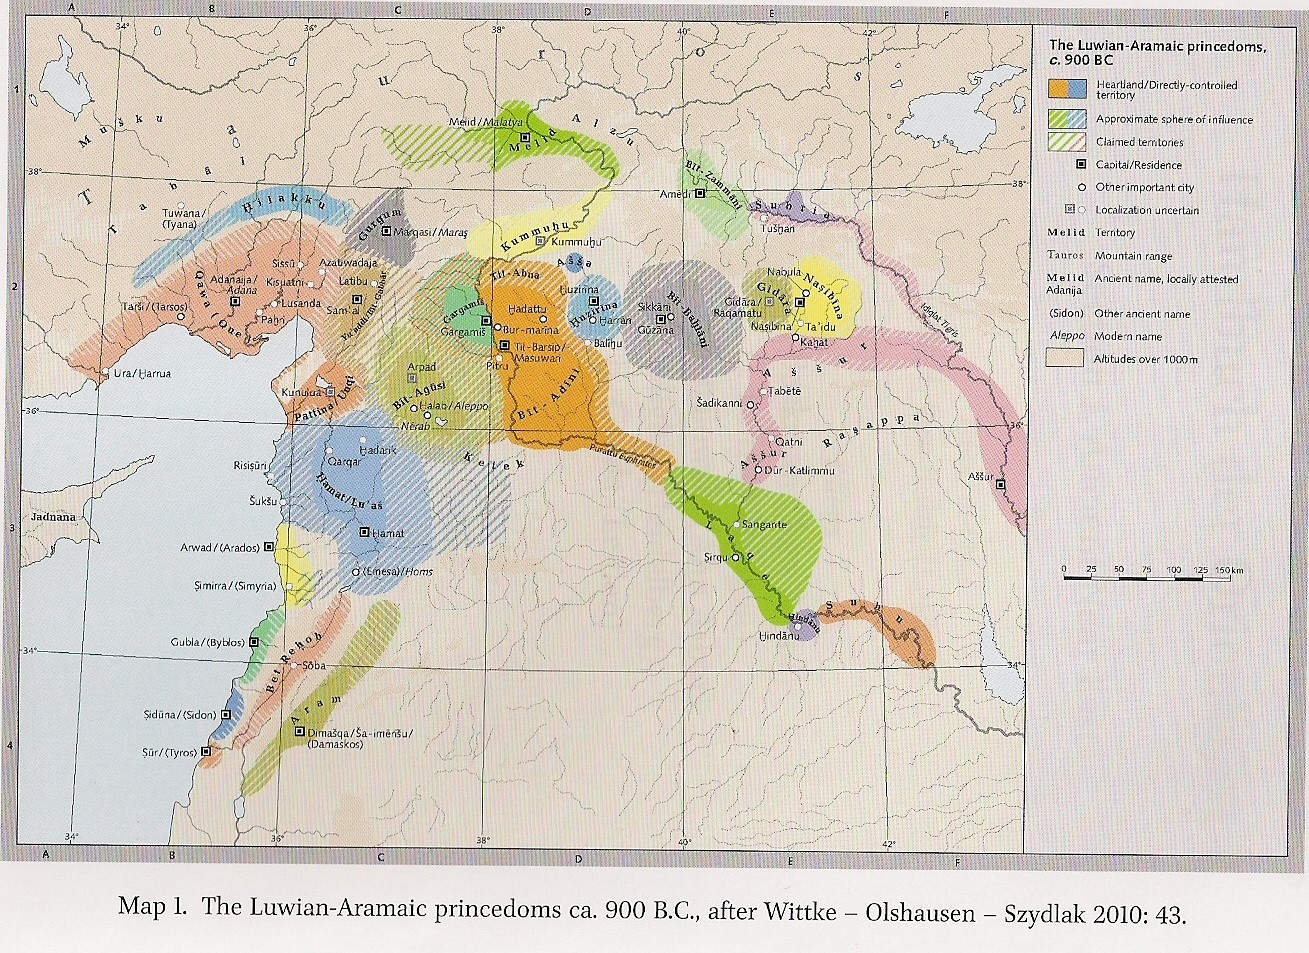 Aramese koninkrijken rond 900 v. Chr. Naar: Wittke, Olshausen & Szydlak (2013), p. 43.